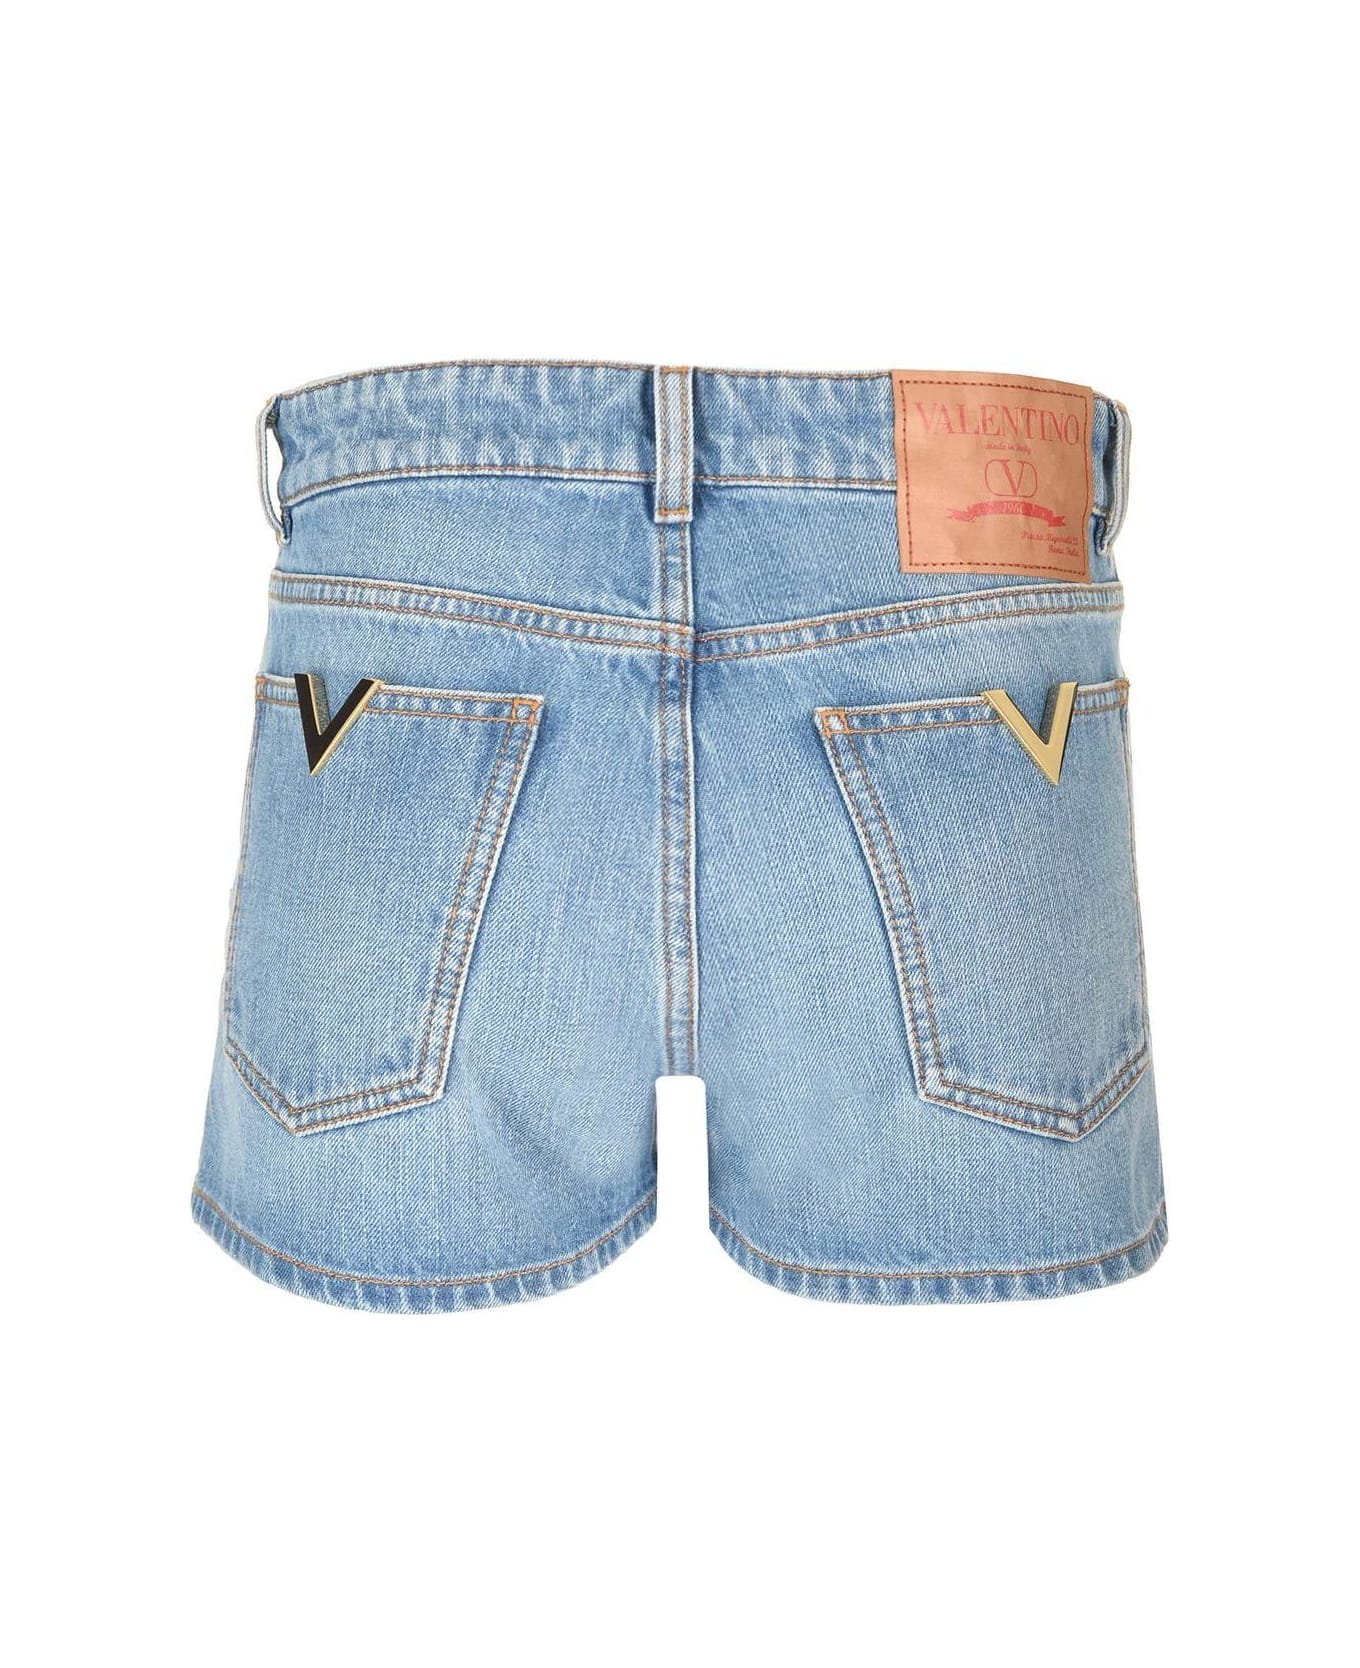 Valentino Vlogo Thigh-high Denim Shorts - Blue